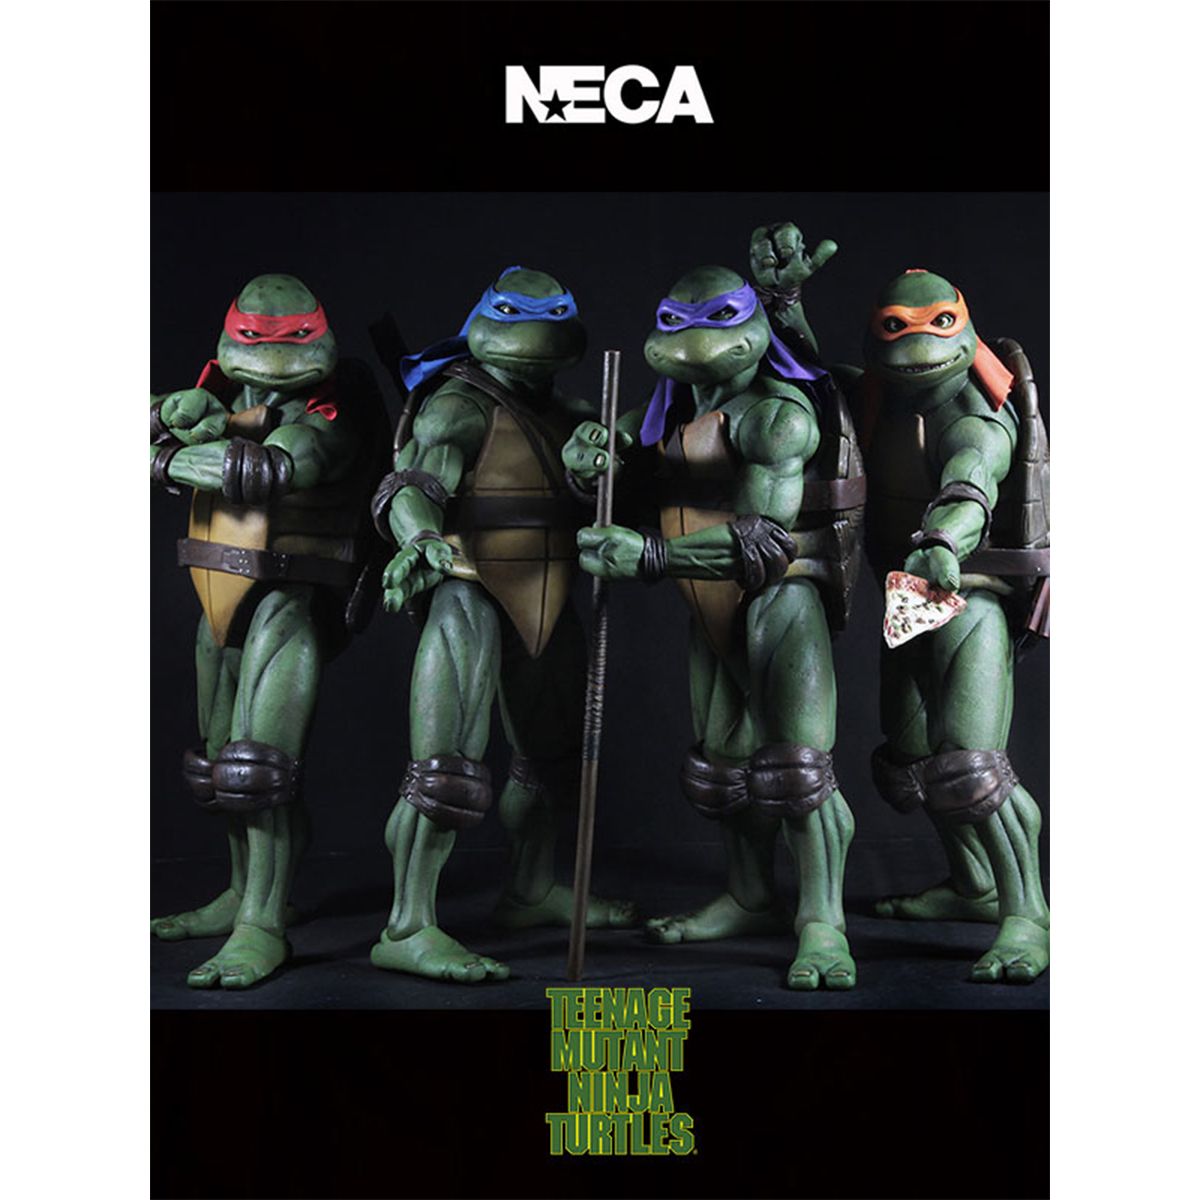 اکشن فیگور نکا مدل لاکپشت های نینجا طرح Turtle Ninja مجموعه 4 عددی -  - 10